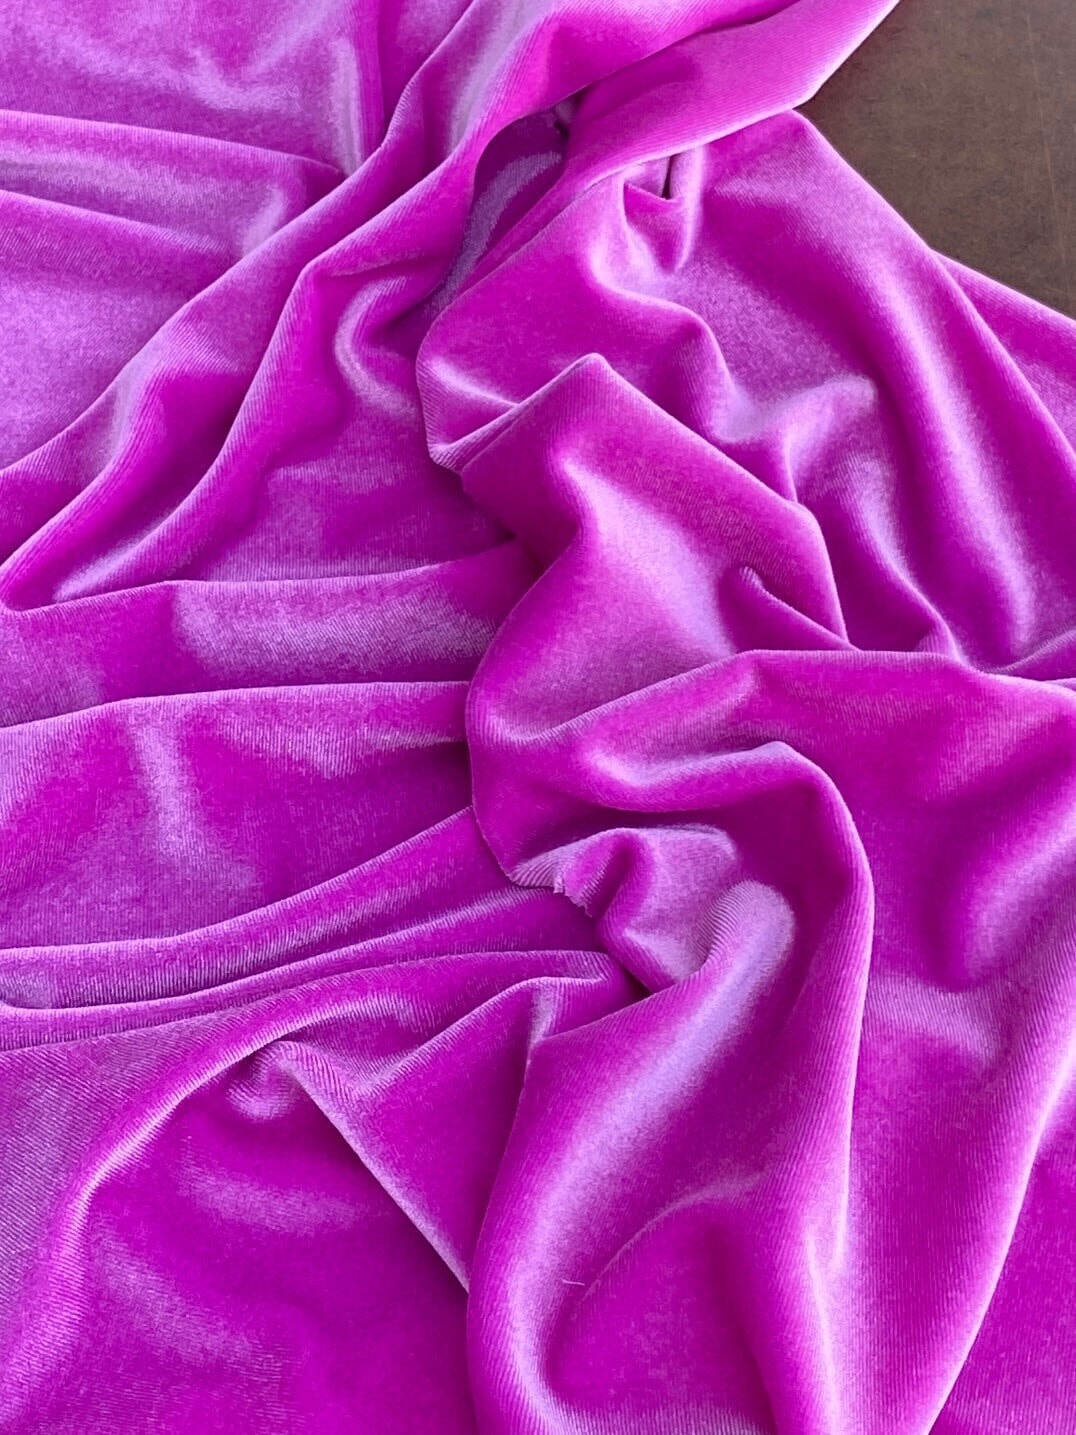 pinkberry velvet, hot pink velvet fabric, fuchsia stretch velvet, hot pink velvet fabric for dress, vevlet for scrunchies, cheap velvet fabric, princess pink velvet, neon pink velvet fabric